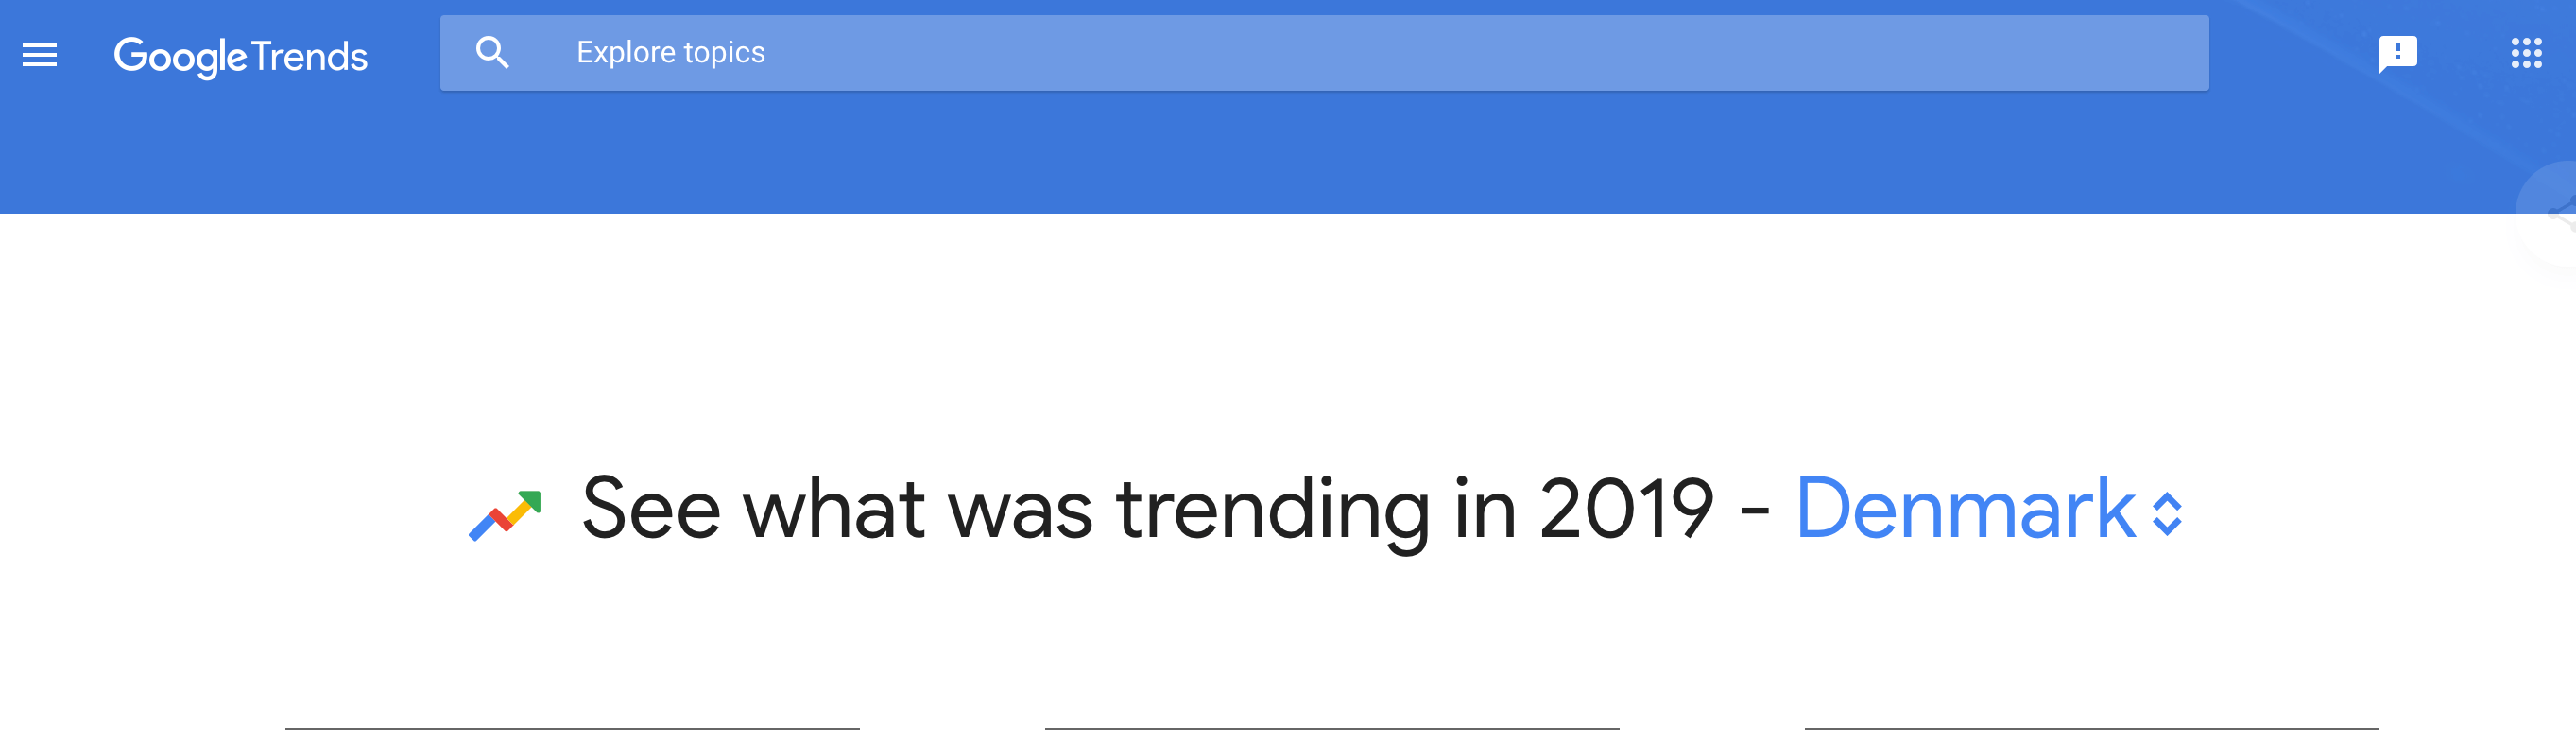 Google Trends 2019